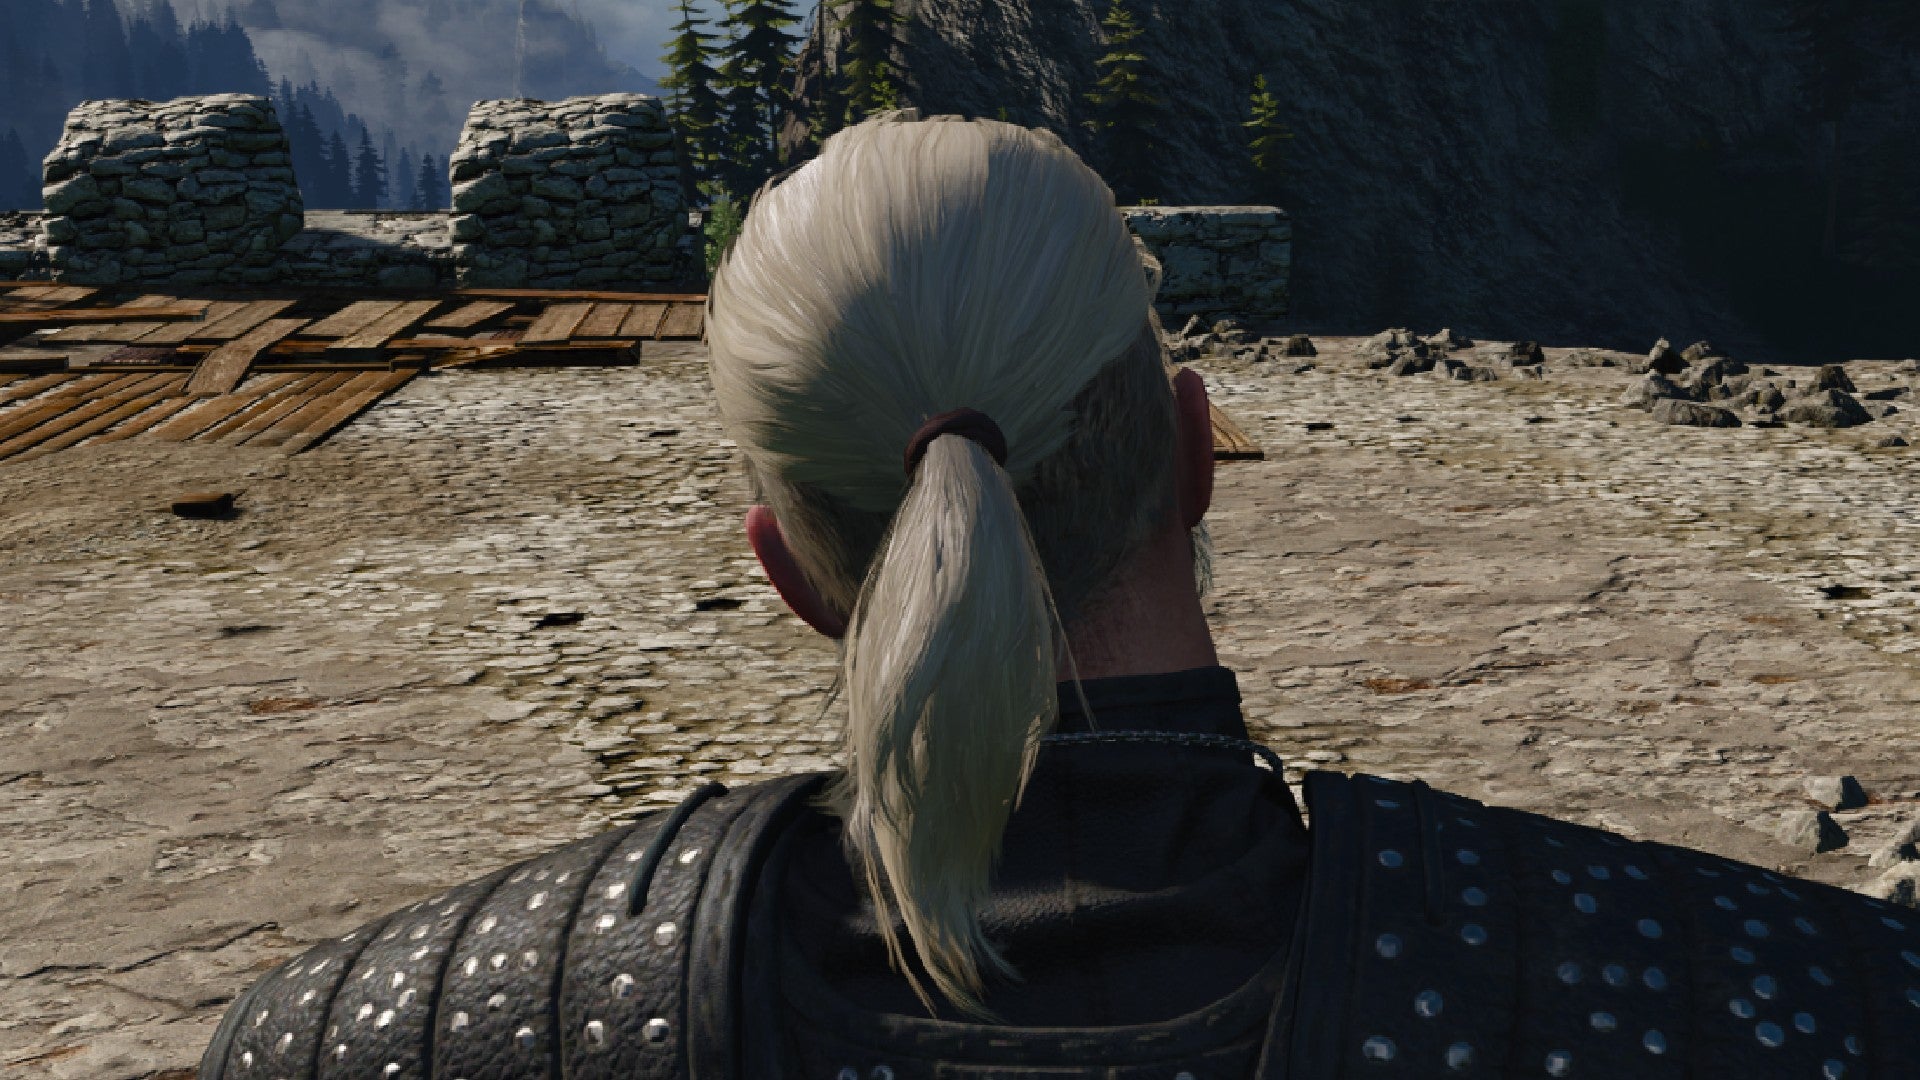 Captura de pantalla de Witcher 3 que muestra el corte de pelo afeitado con cola de caballo de Geralt desde la parte posterior.